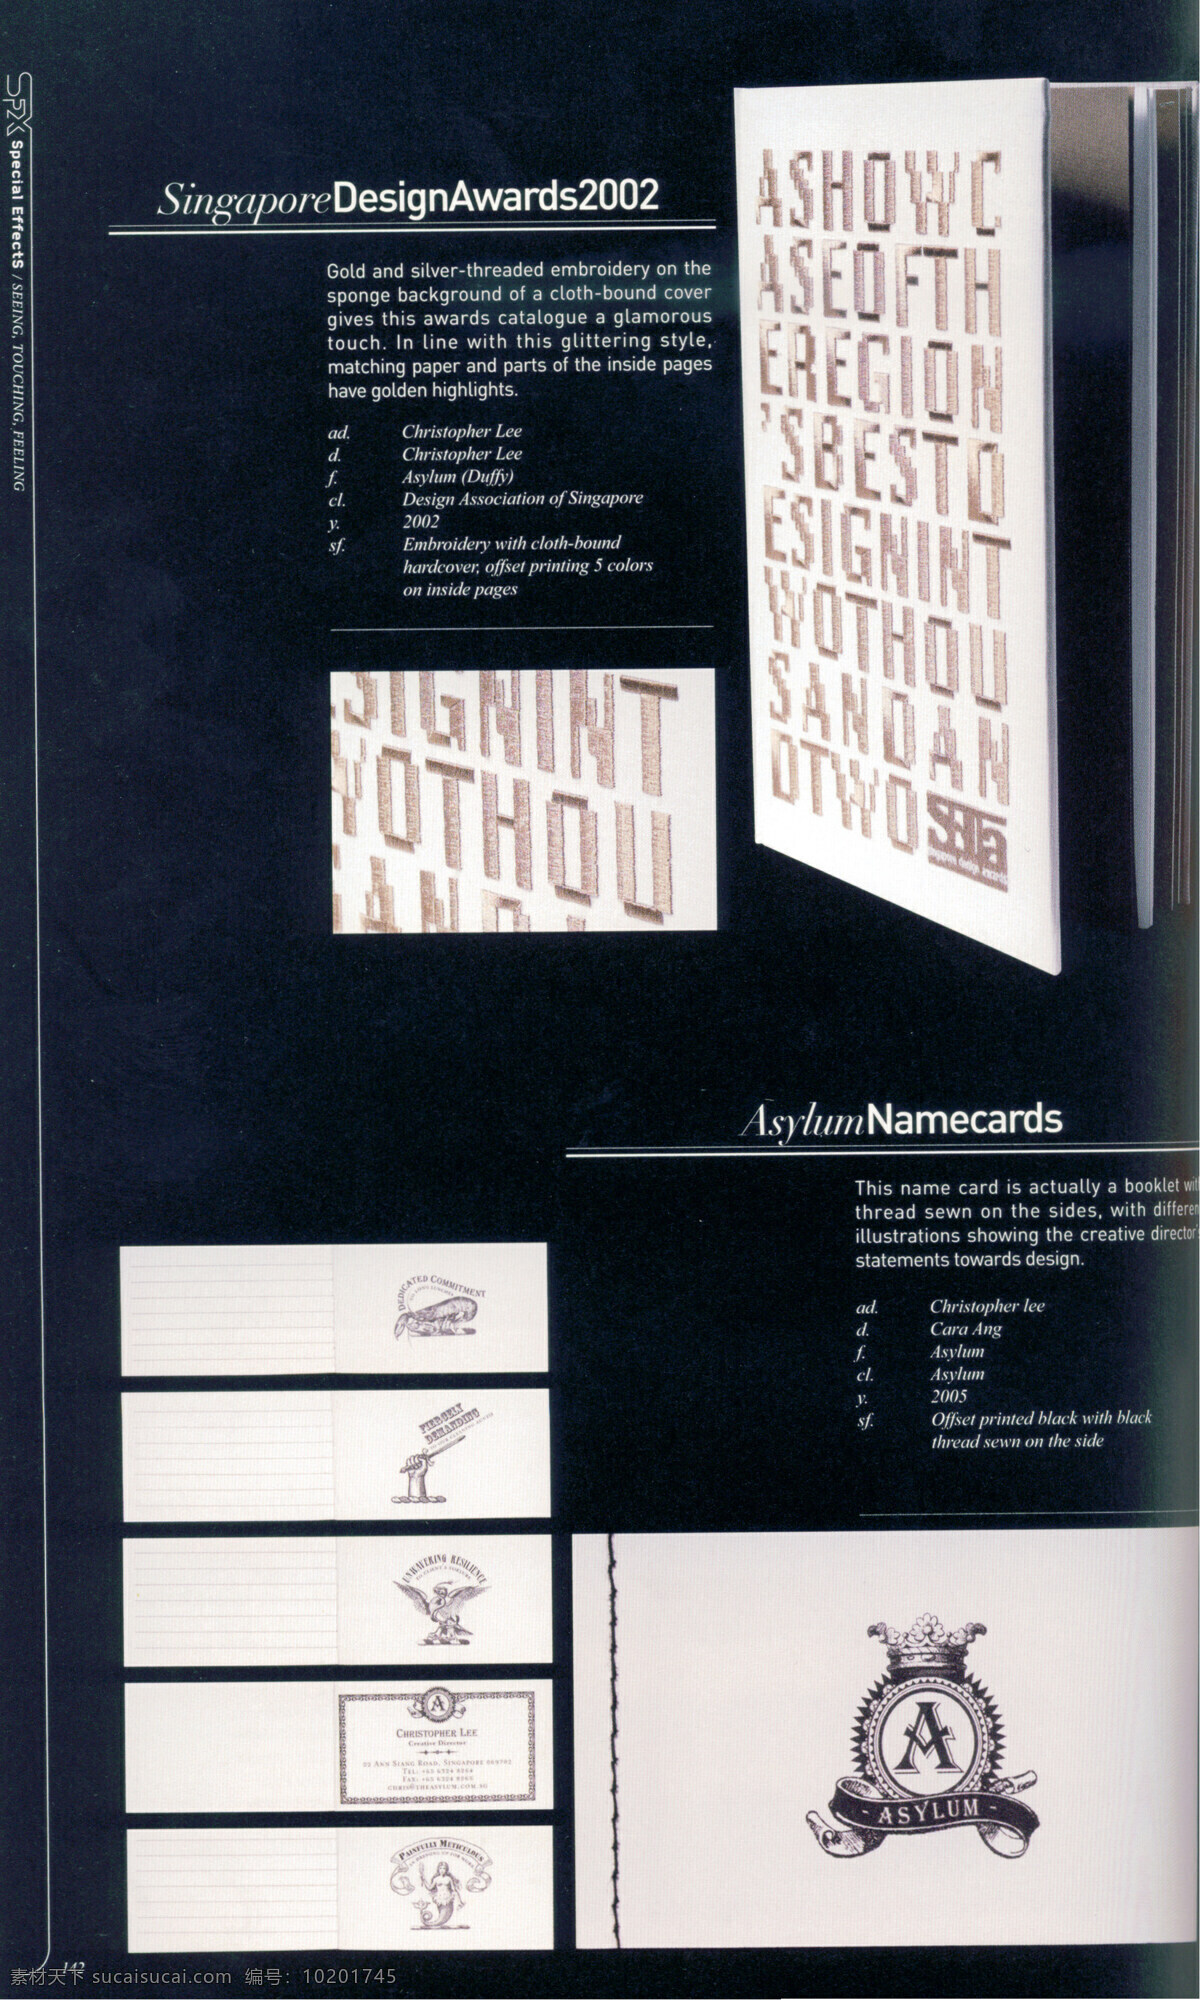 装帧设计 书籍装帧 版式 版式设计 设计素材 平面设计 黑色